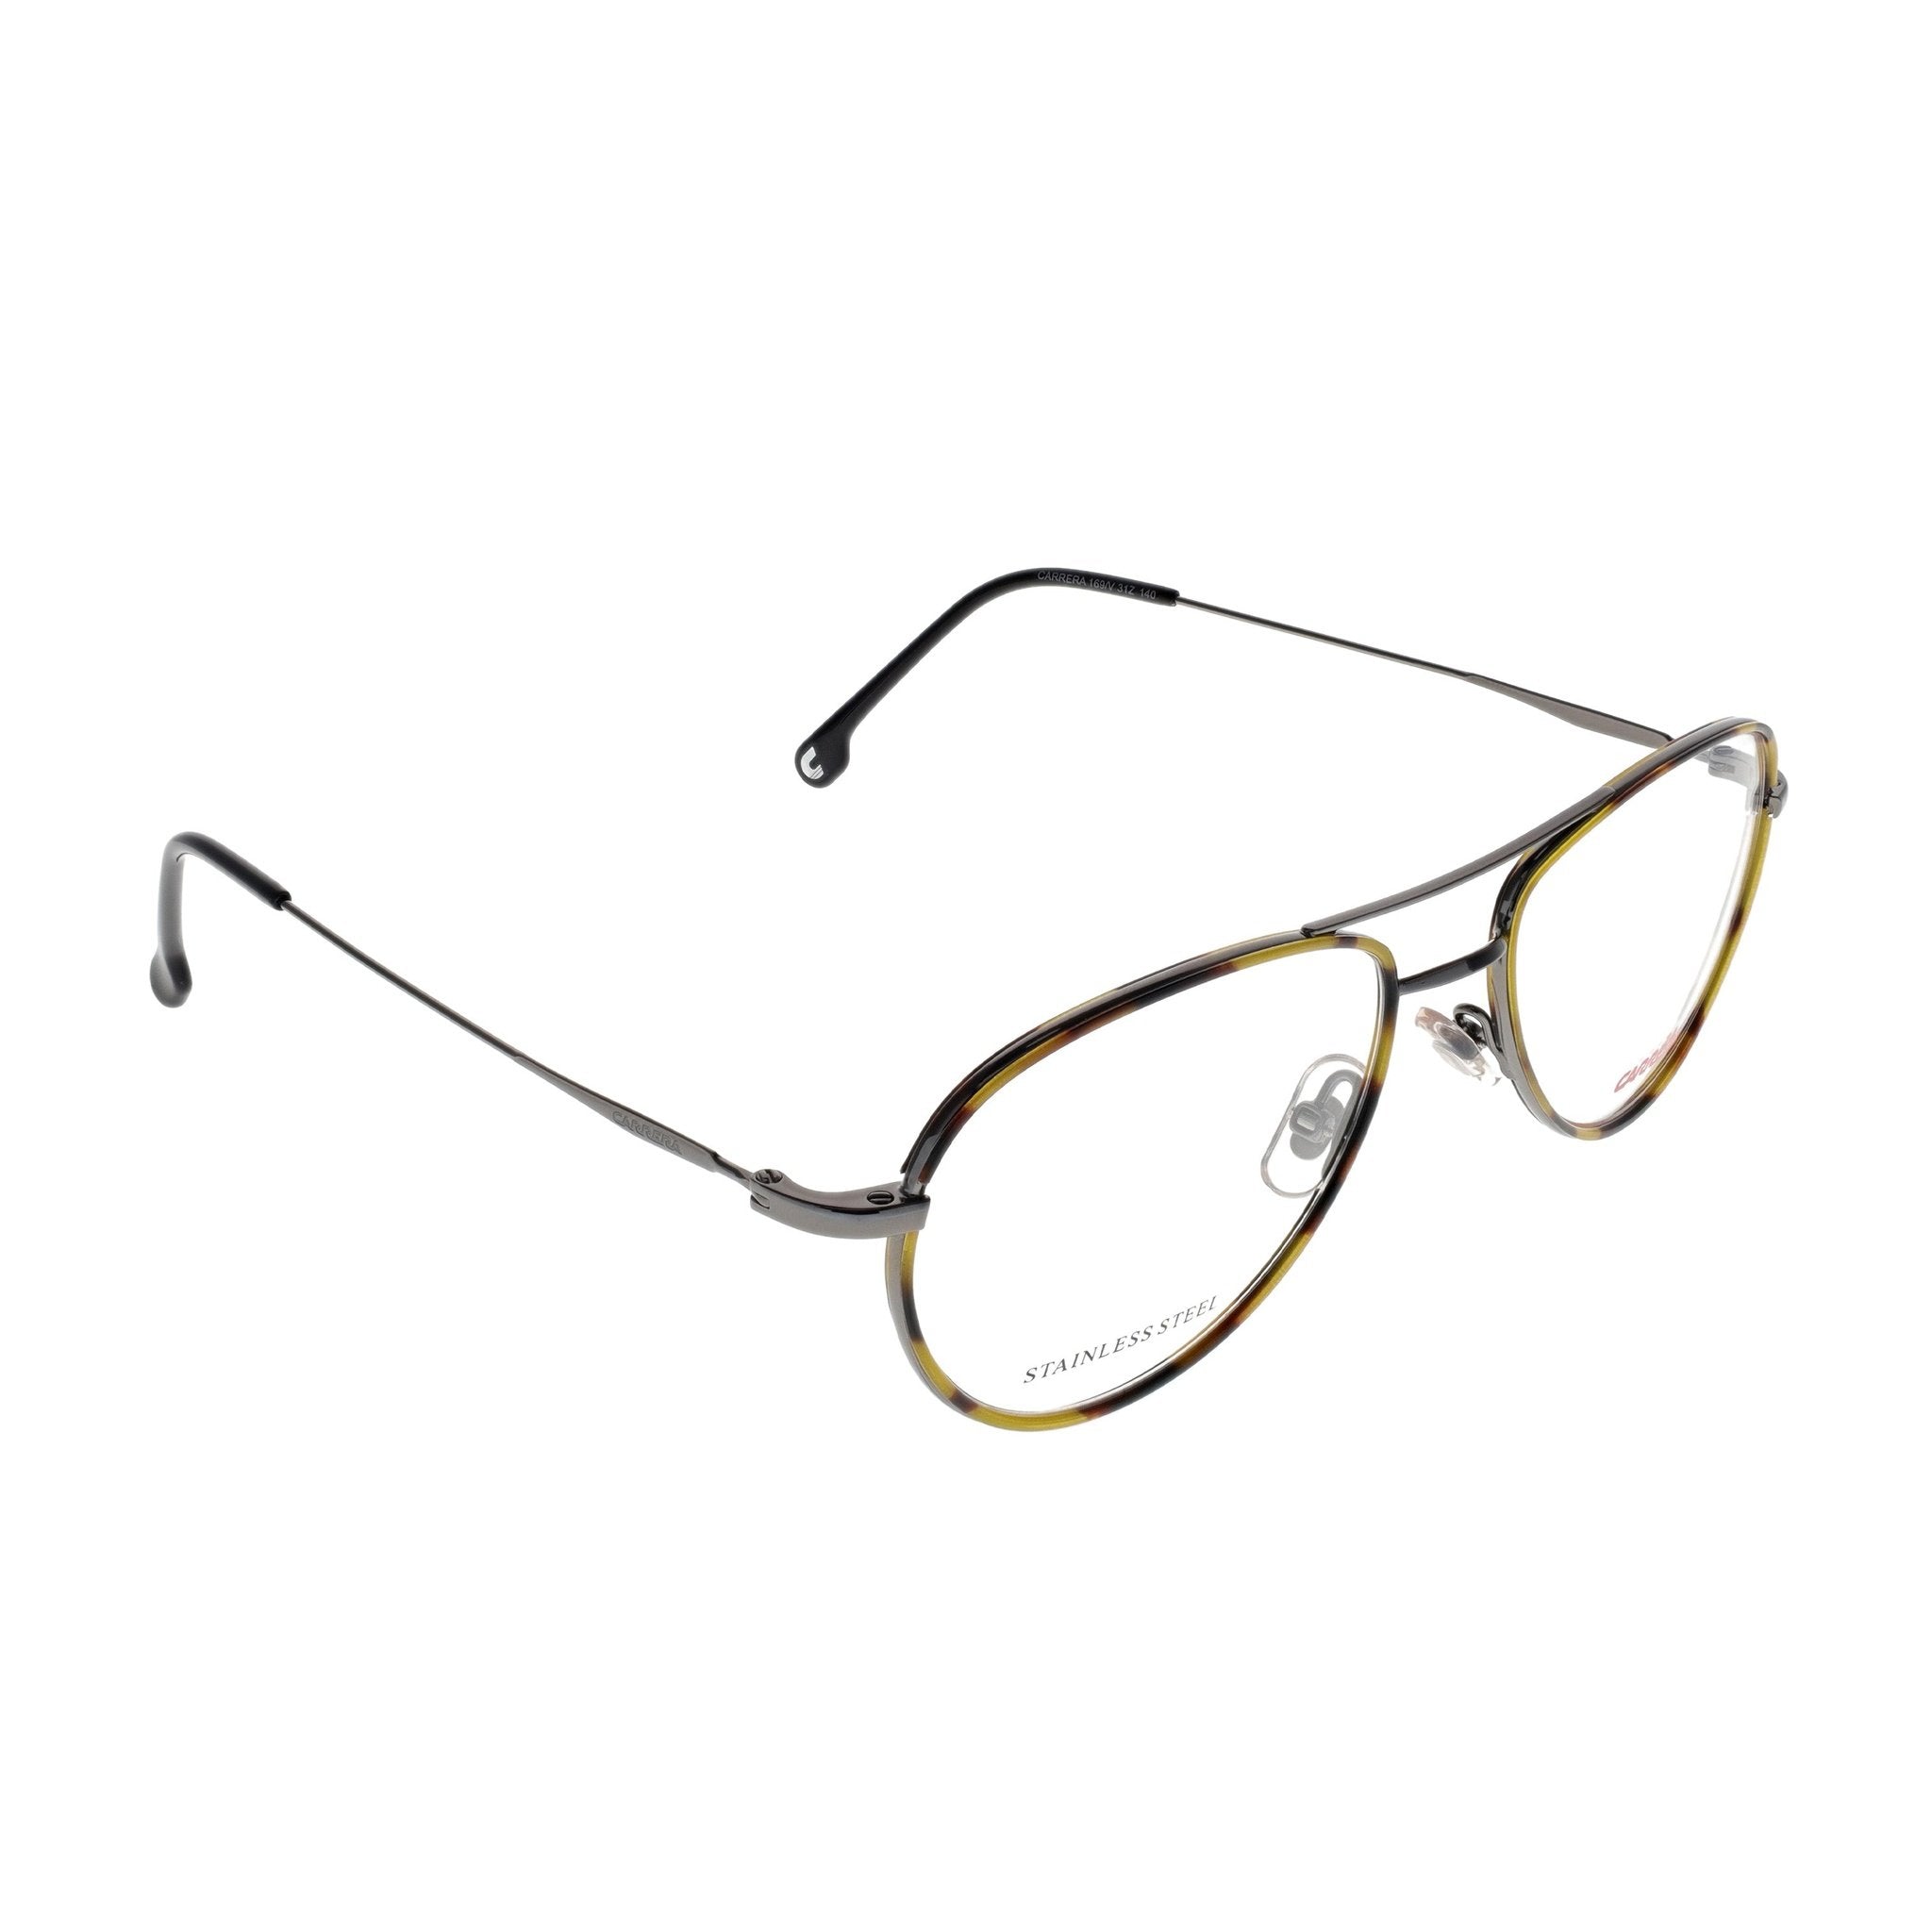 Carrera Eyeglasses - 169V-31Z